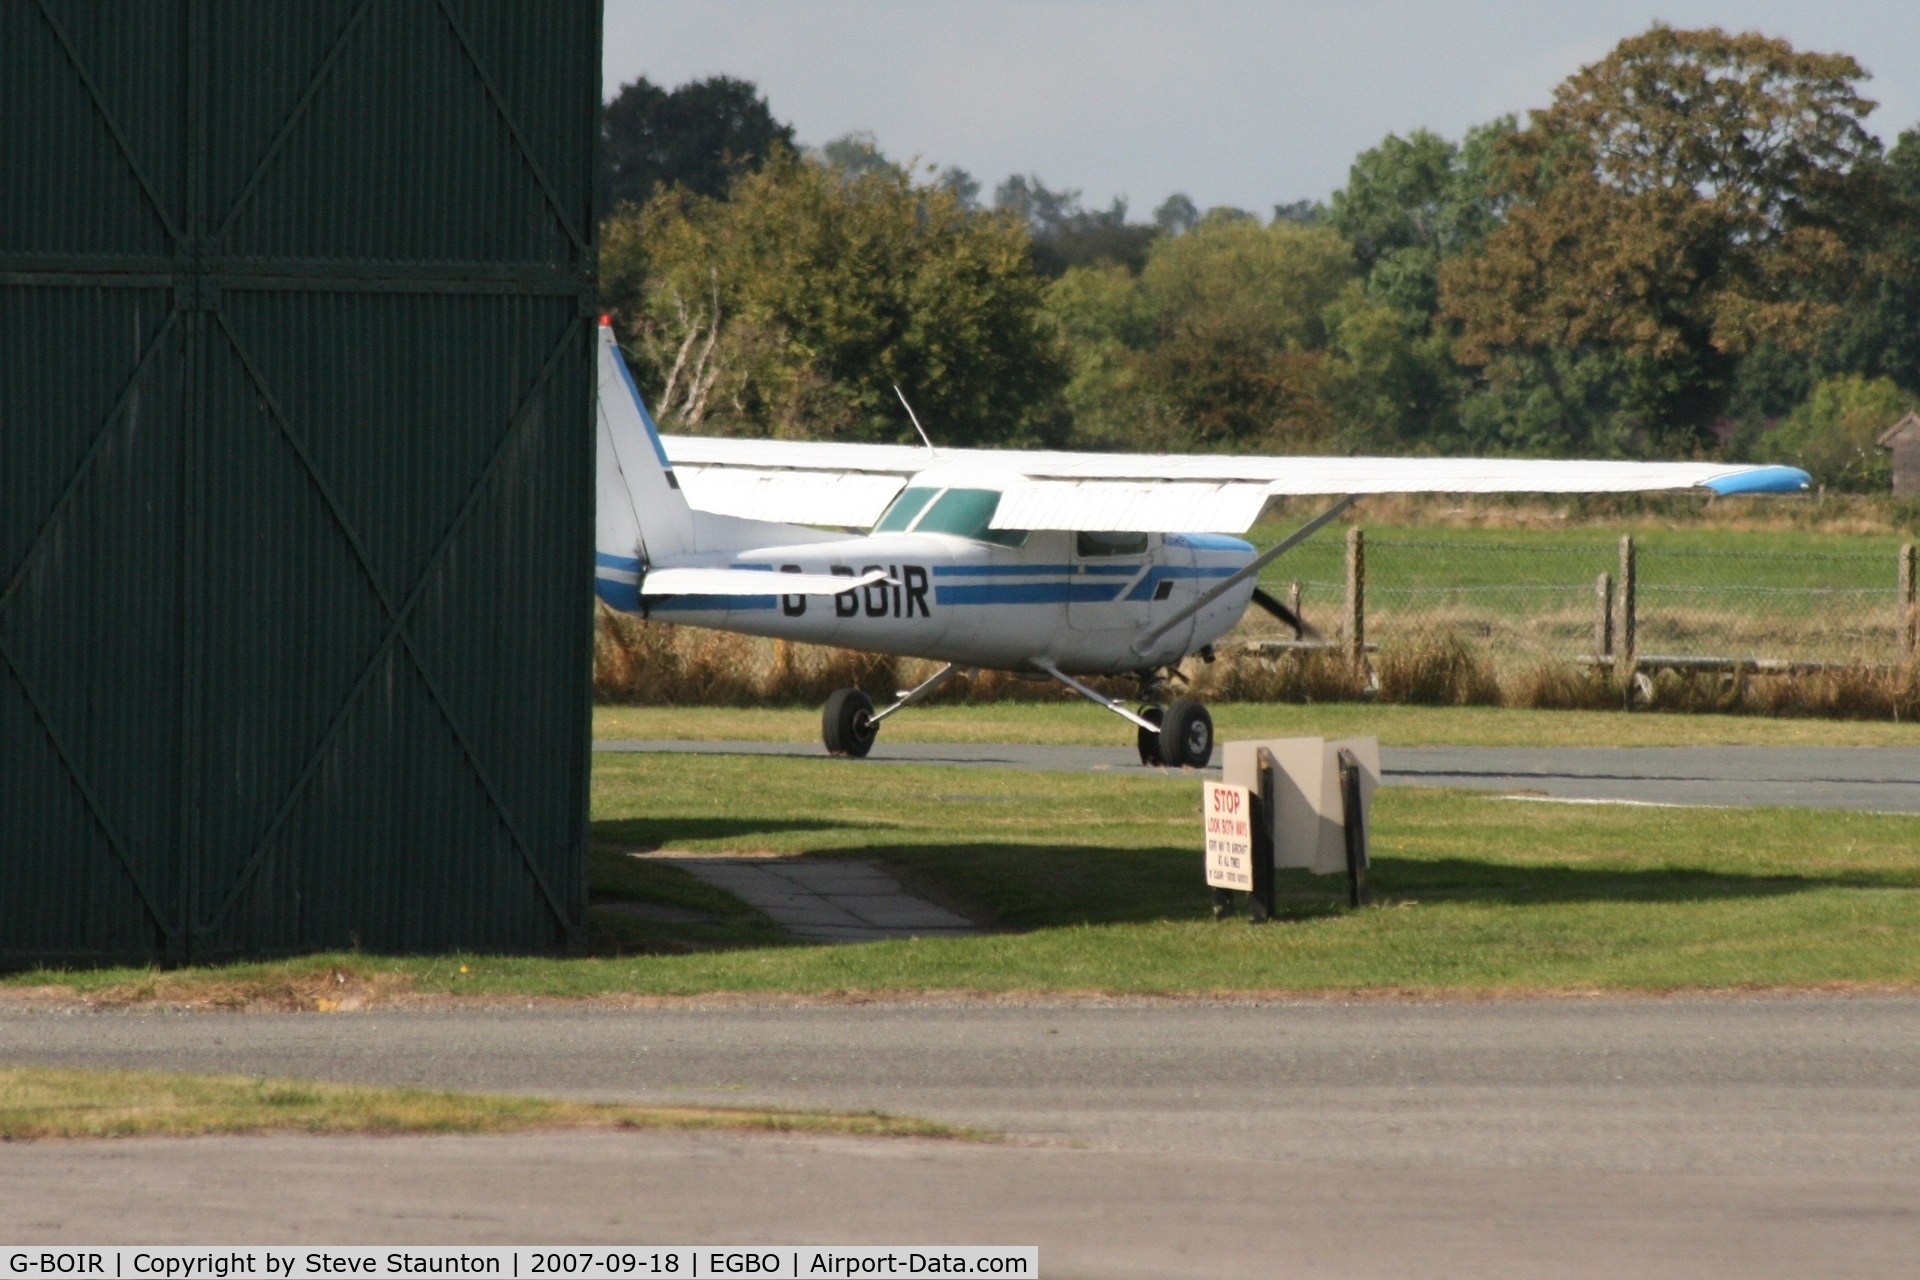 G-BOIR, 1979 Cessna 152 C/N 152-83272, Taken at Halfpenny Green 18th September 2007